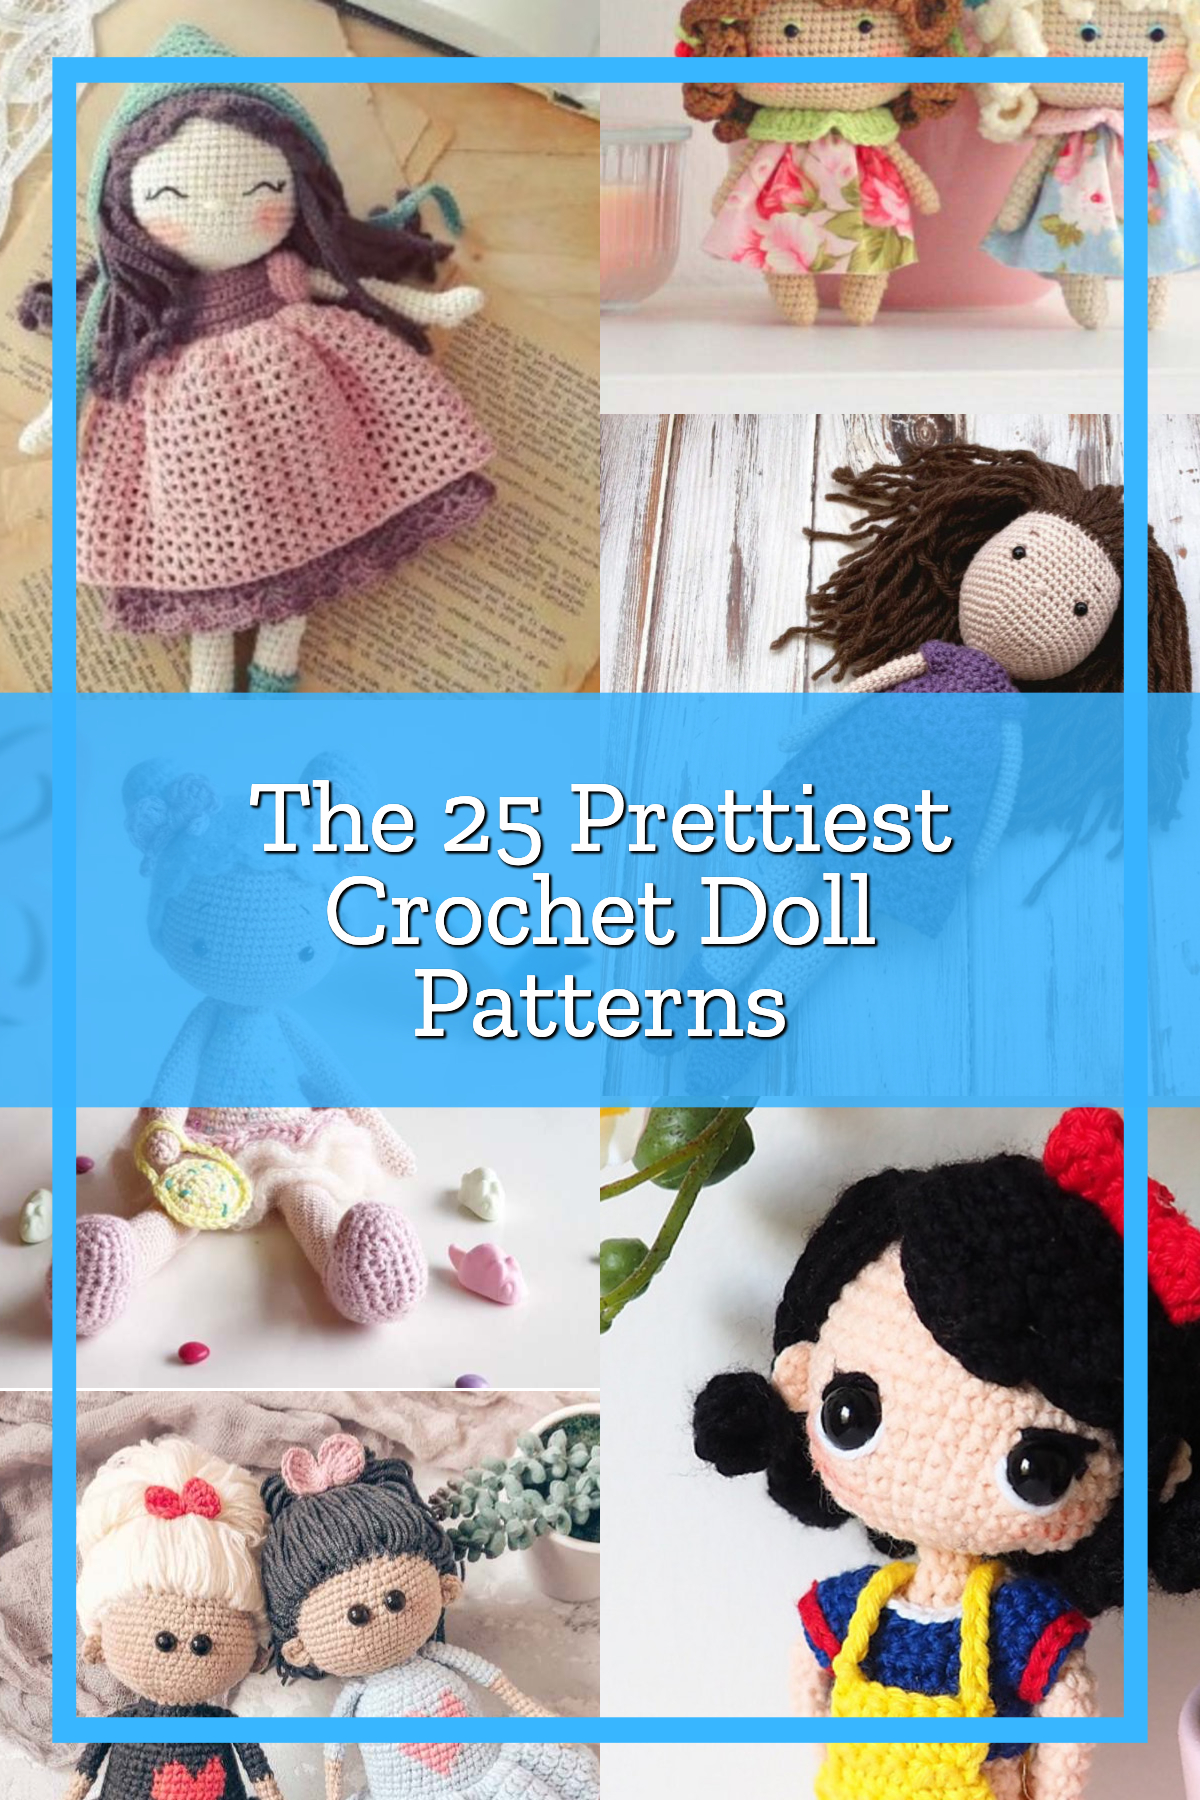 The 25 Prettiest Crochet Doll Patterns